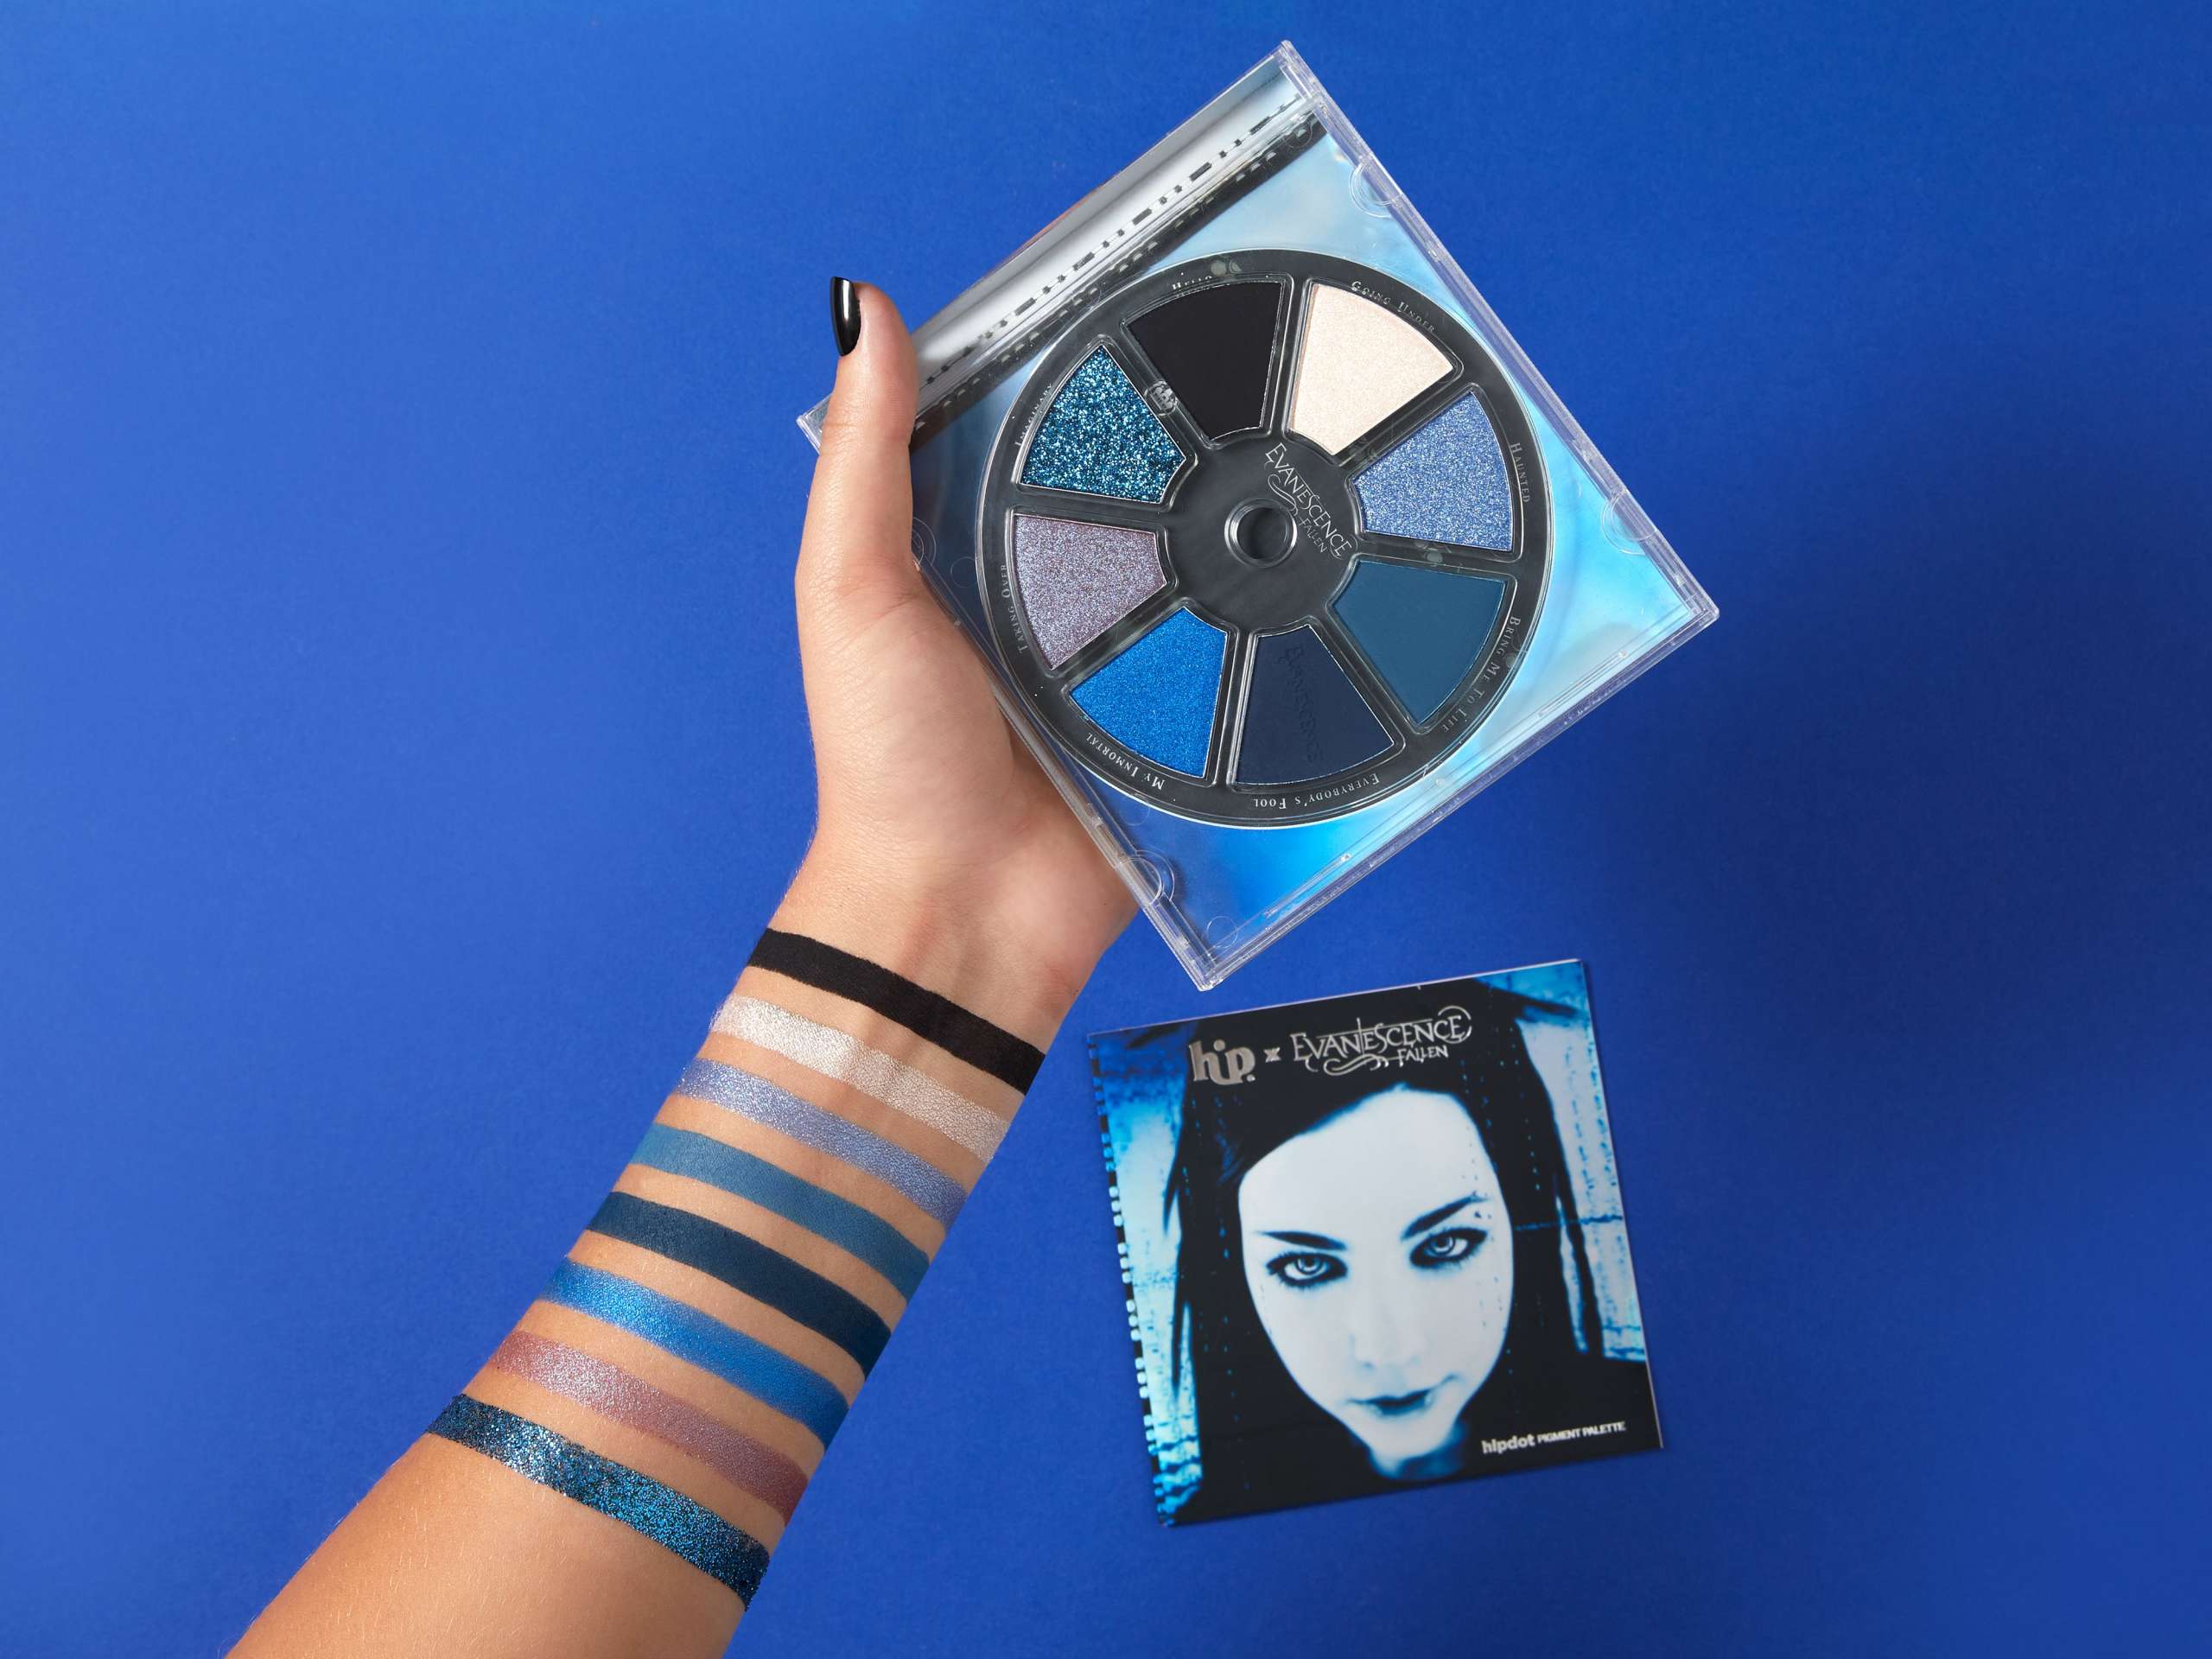 La sorpresiva celebración de Evanescence: Sombras para conmemorar los 20 años de su álbum debut “Fallen”